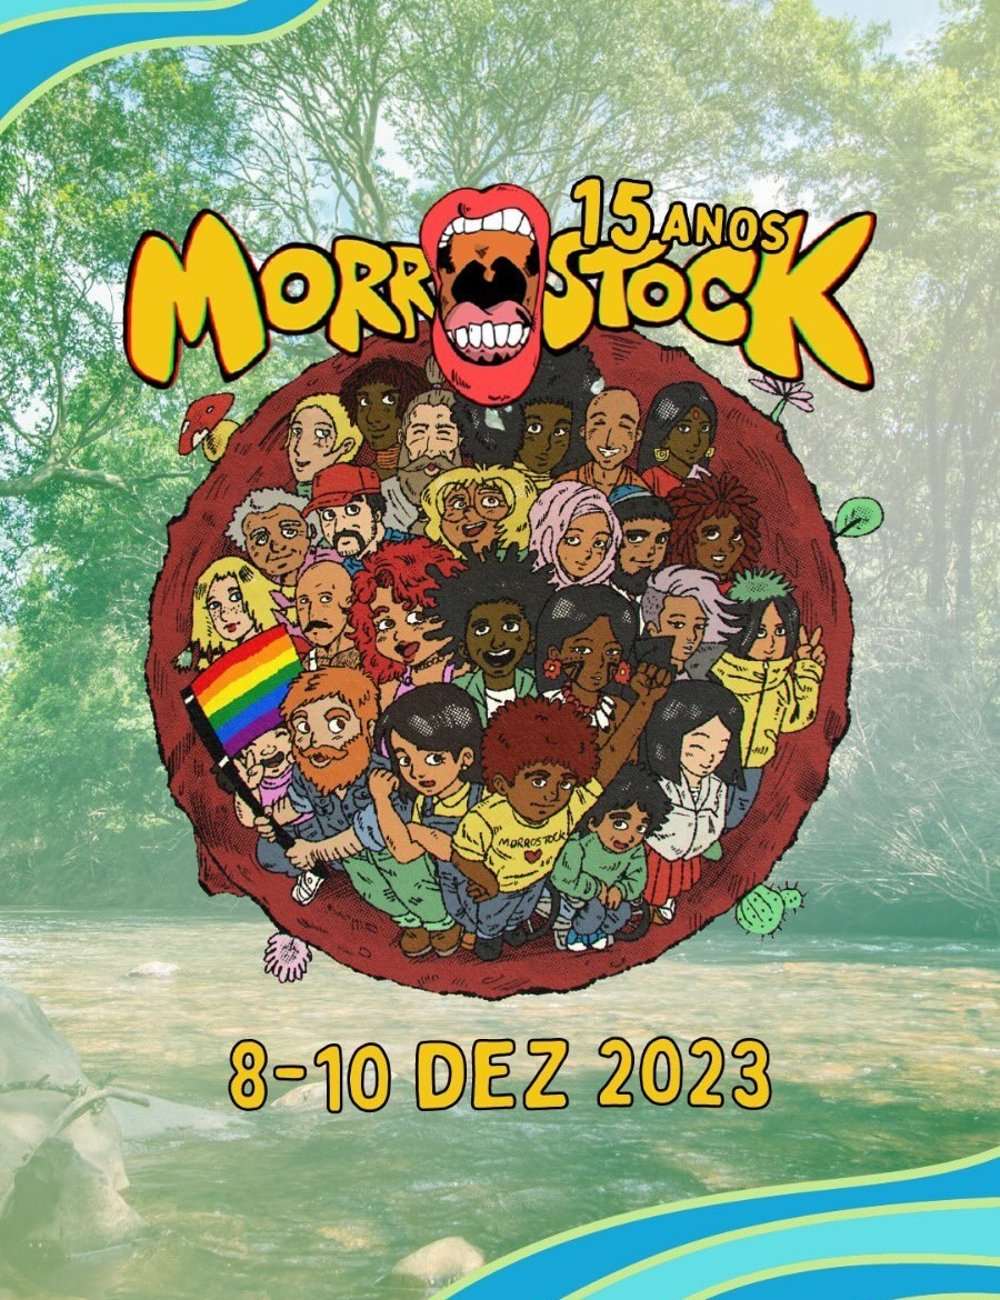 Morrostock - música - festivais de música - verão - Rio Grande do Sul - https://stealthelook.com.br